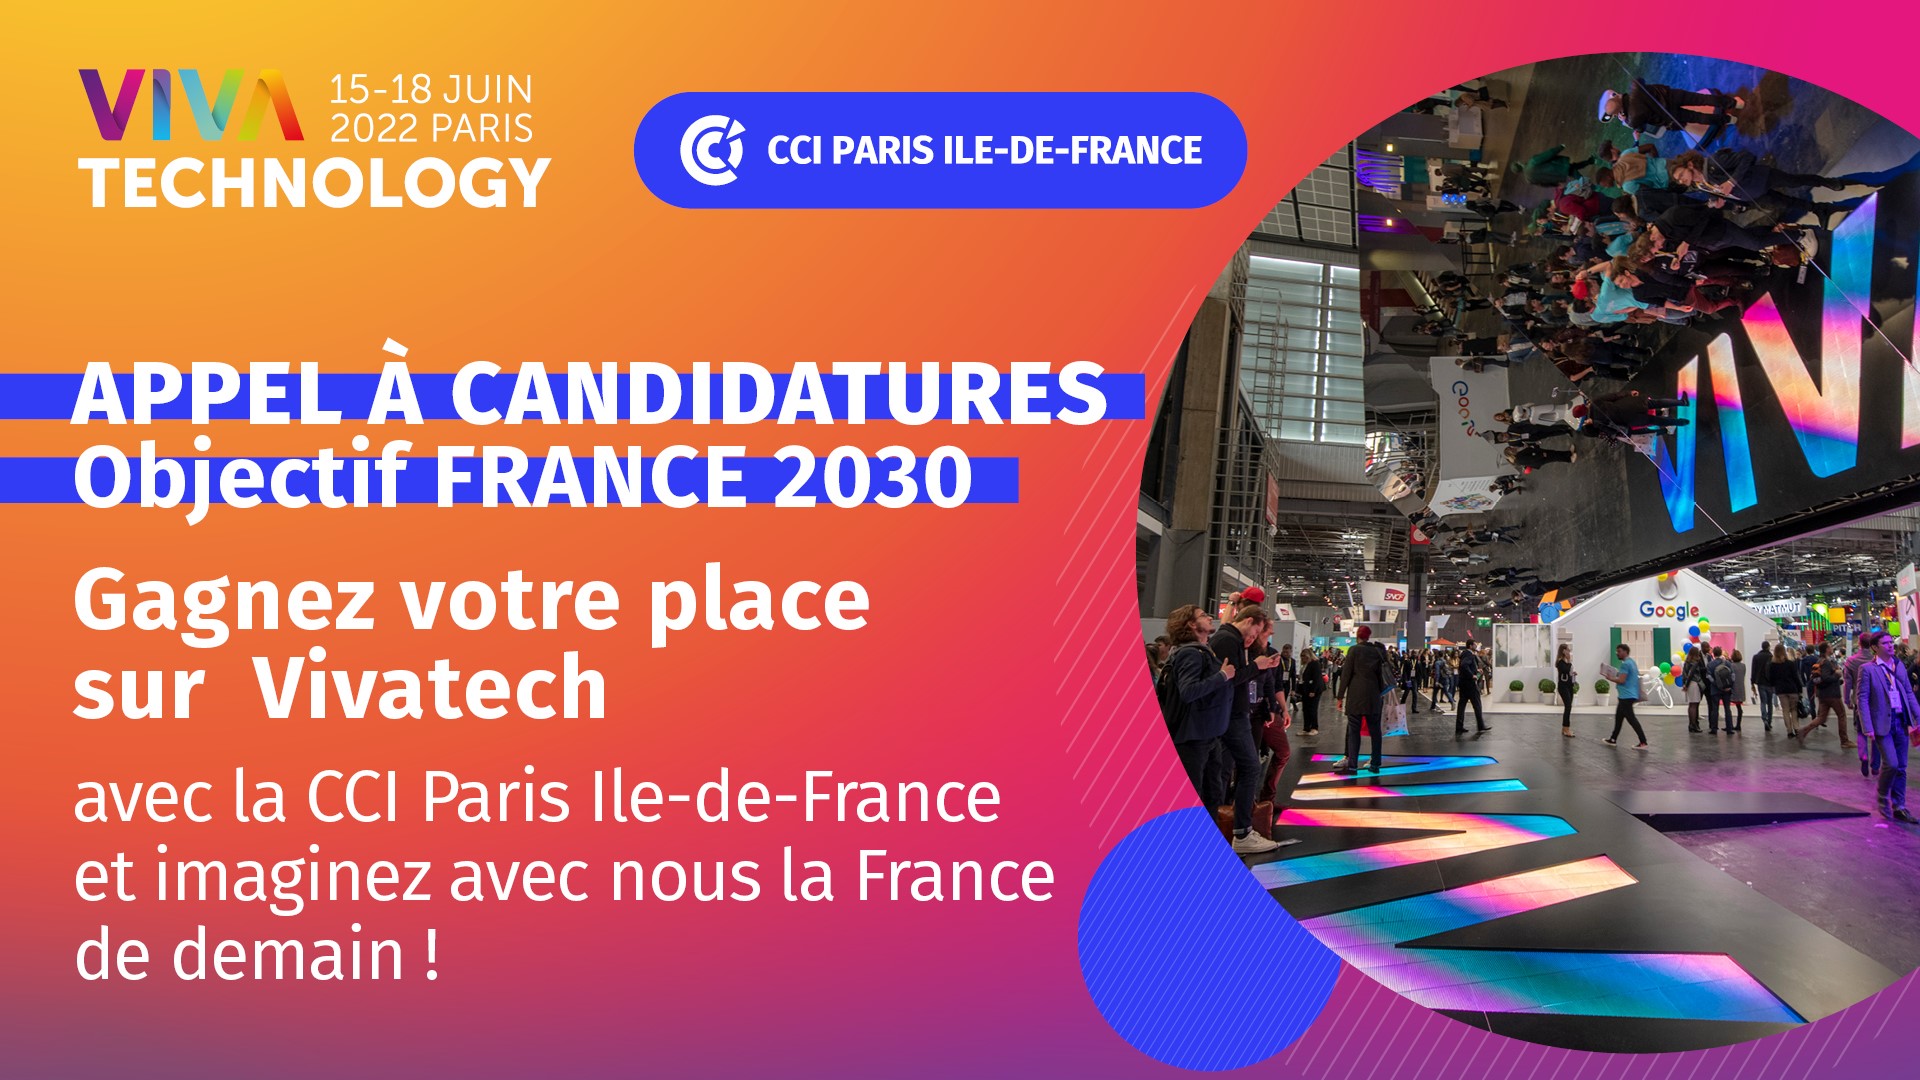 [Participez] à l’appel à candidatures “OBJECTIF FRANCE 2030” organisé par la CCI Paris Ile de France